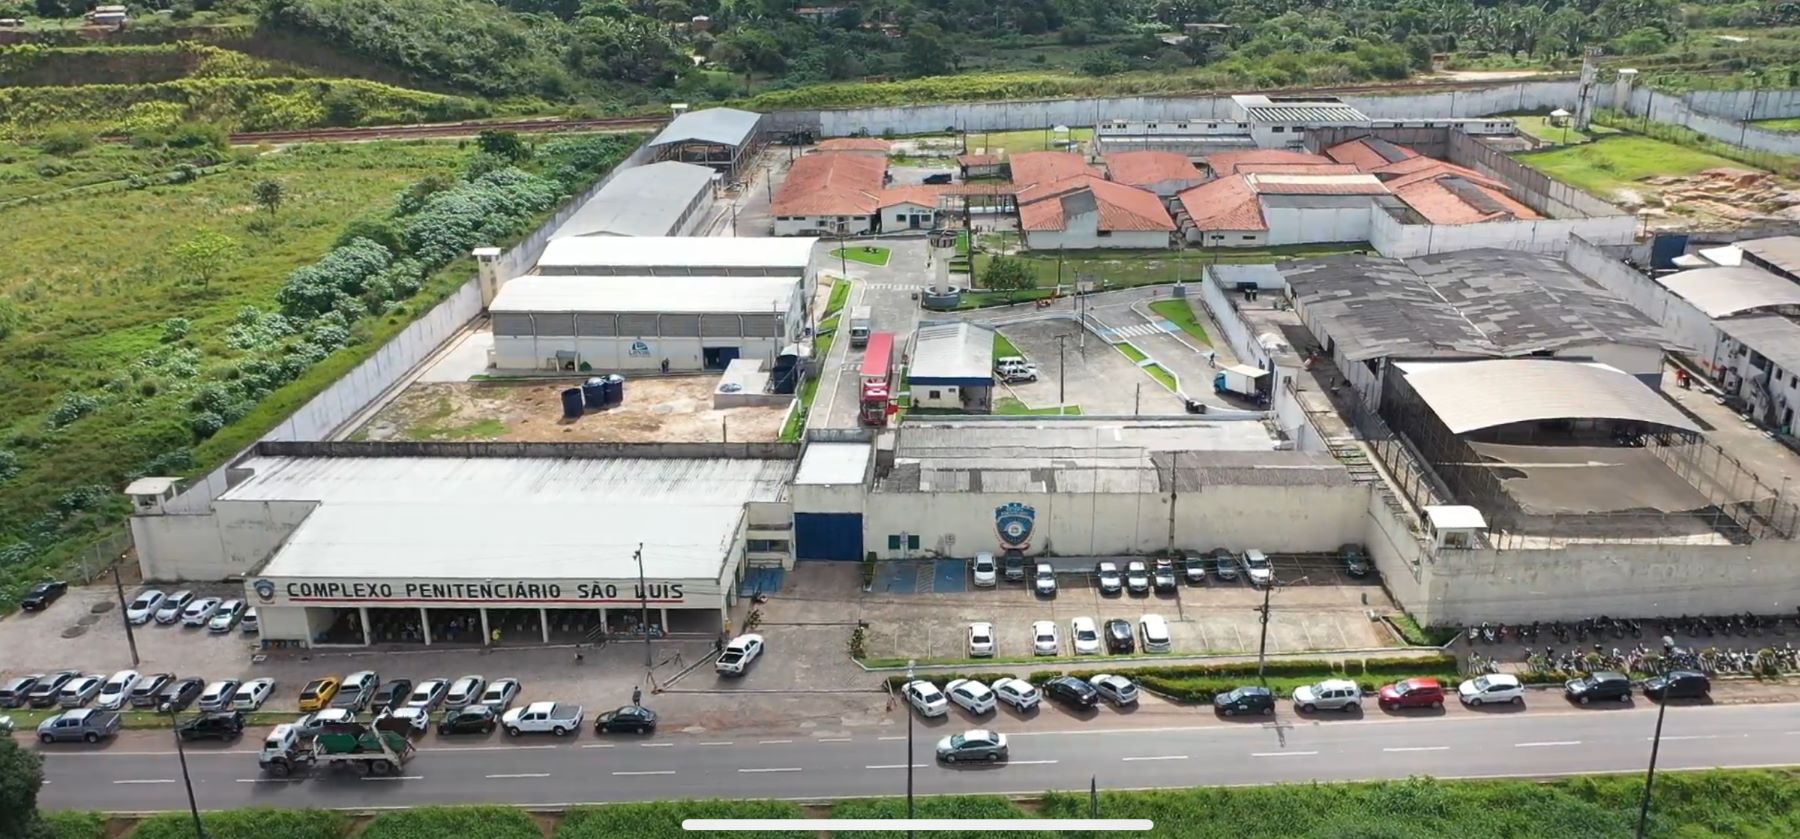 O Complexo Penitenciário São Luís, no bairro de Pedrinhas, após as reformas: novo nome, novas unidades, oficinas de trabalho e prêmios de gestão (Foto: Governo do Maranhão)